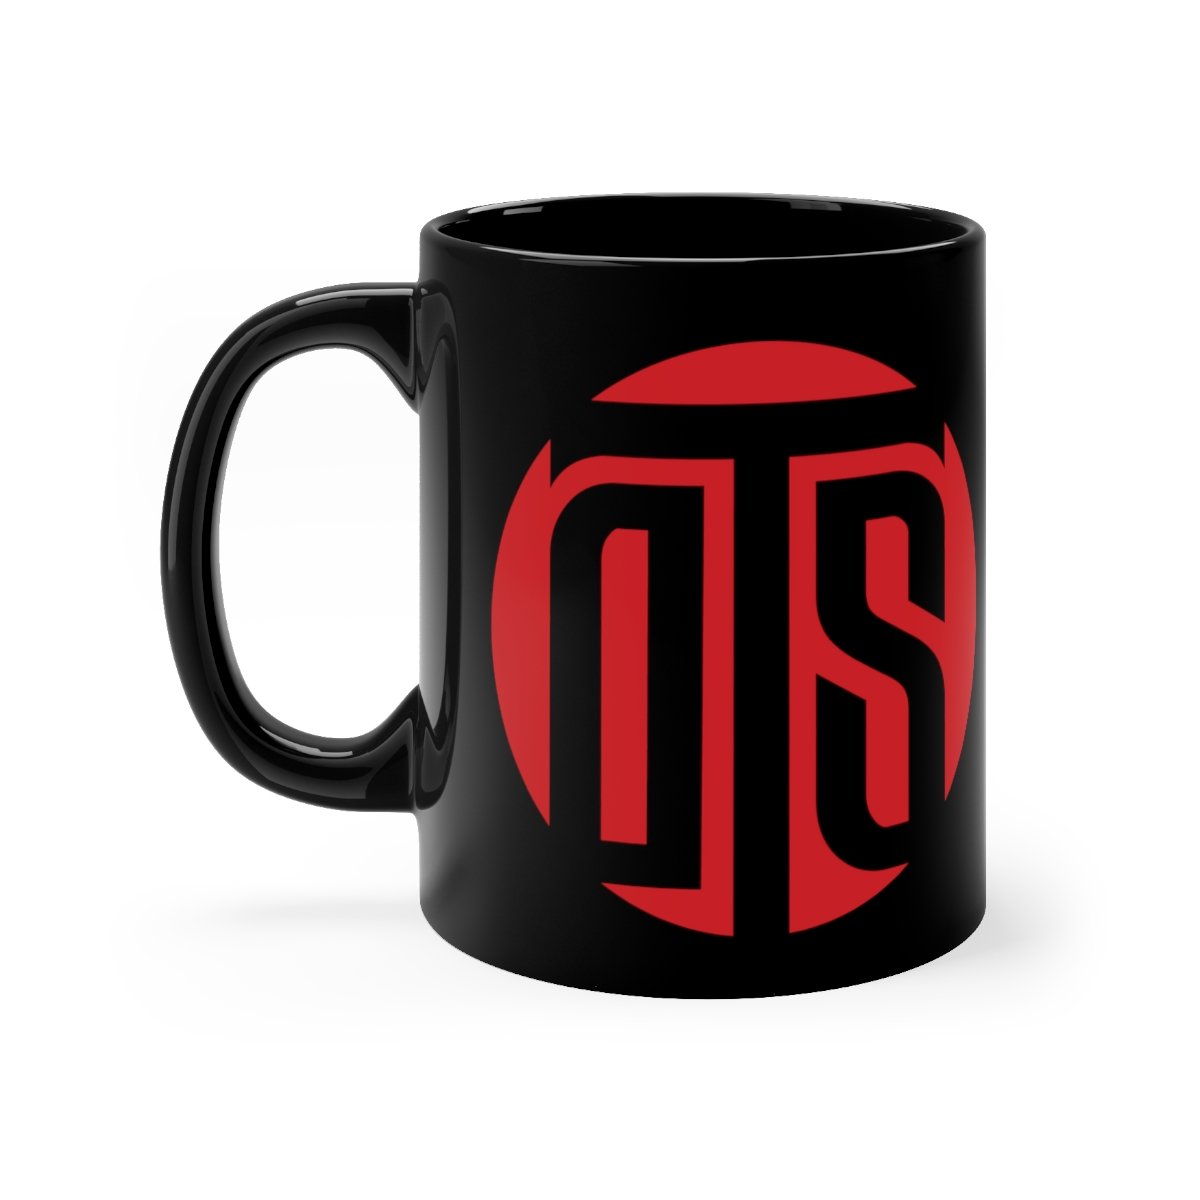 Outside The Shadows OTS – Red Black mug 11oz